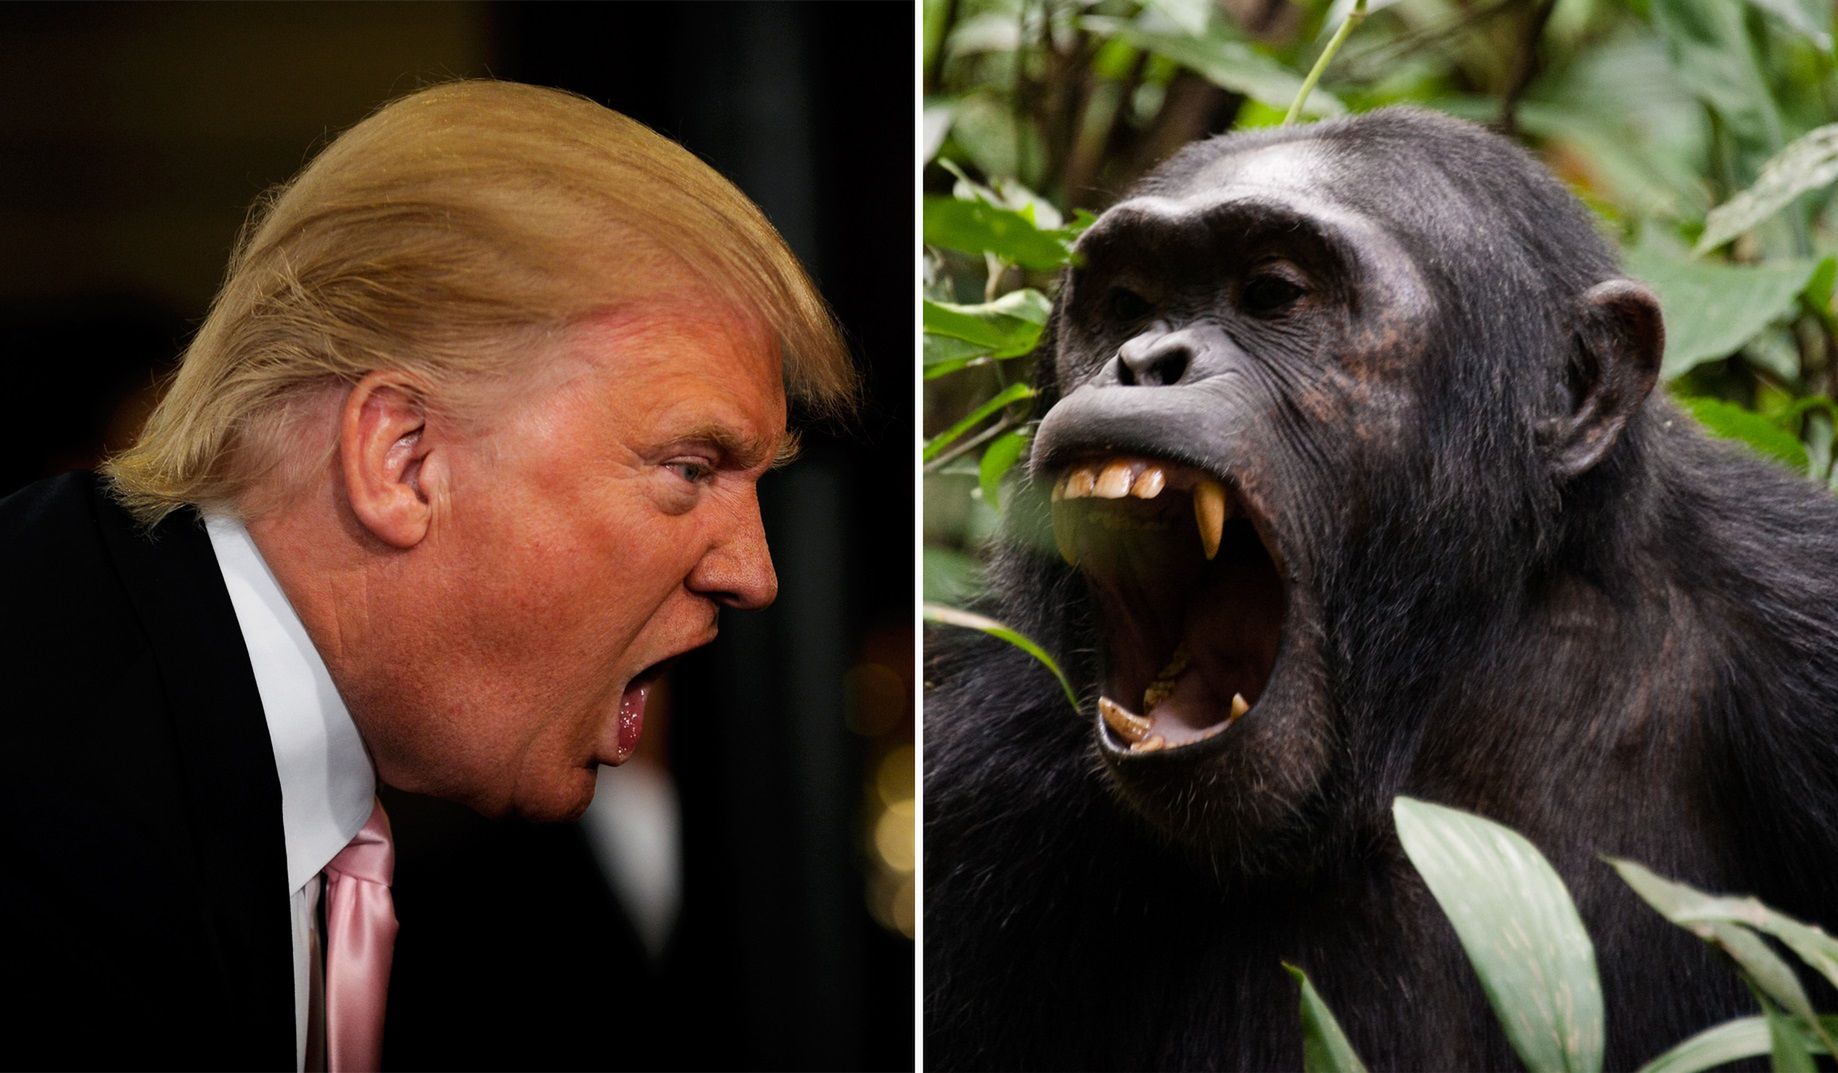 Trump zachowuje się jak szympans. Badaczka wskazuje podobieństwo